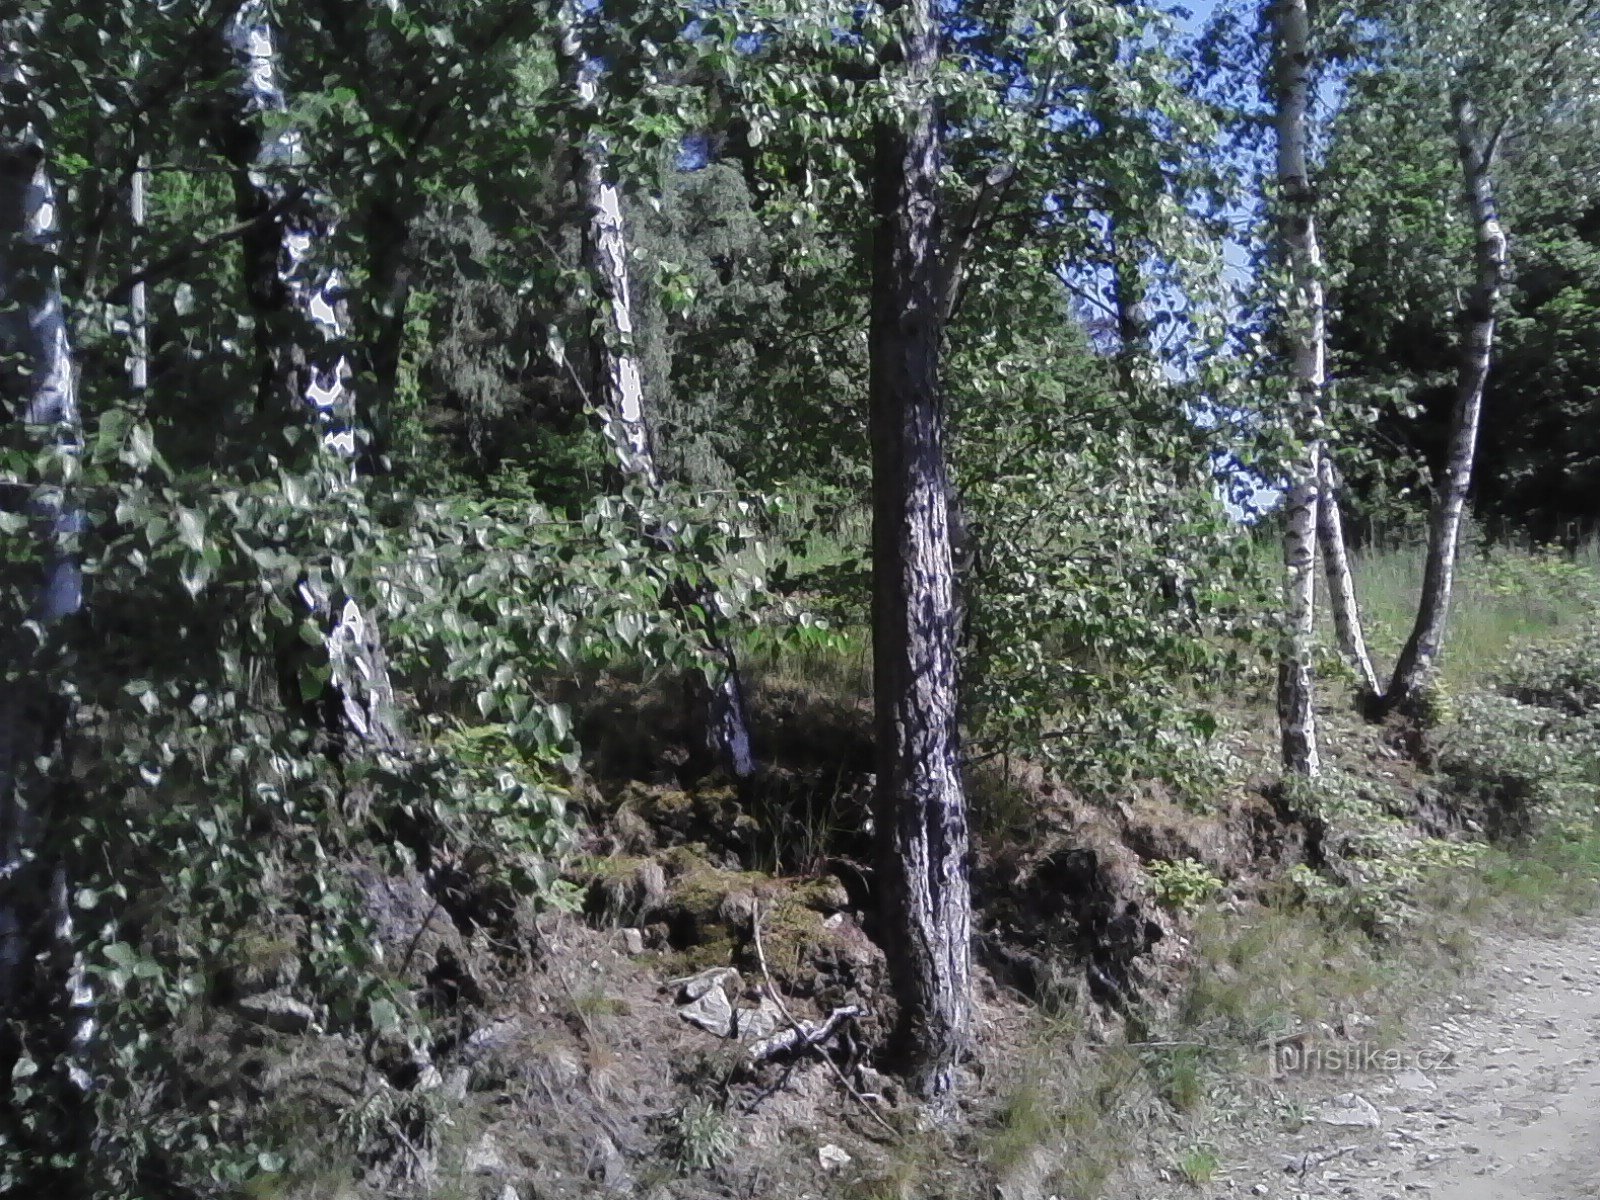 2. Tôi đã leo đồi đến Javorová skála.